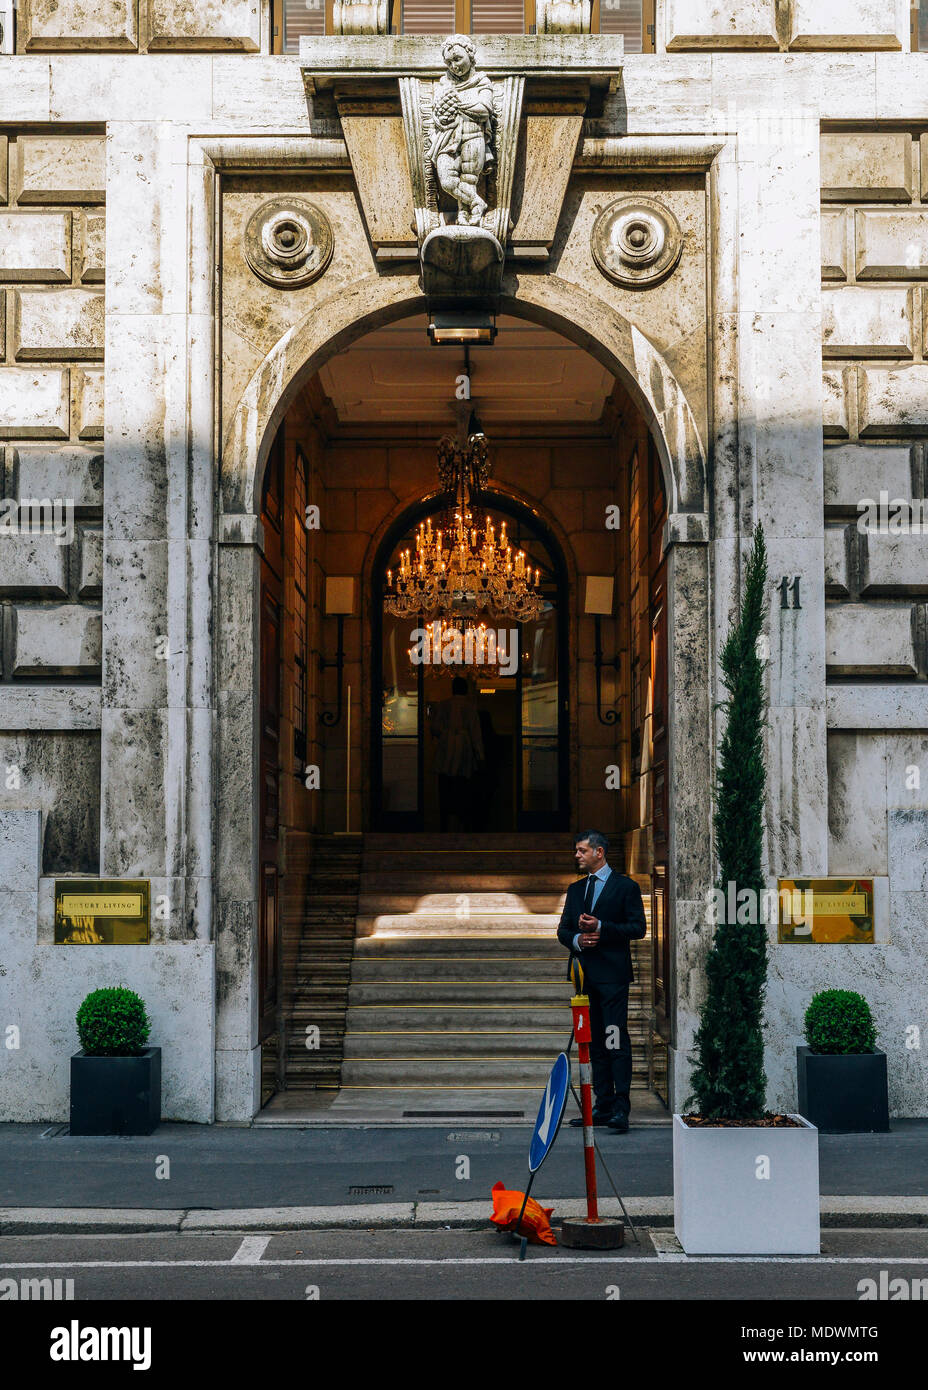 Mailand, Italien - 18 April 2018: Ein Mann steht am Eingang zu einem luxuriösen gotische Eingang zu einem Gebäude Stockfoto